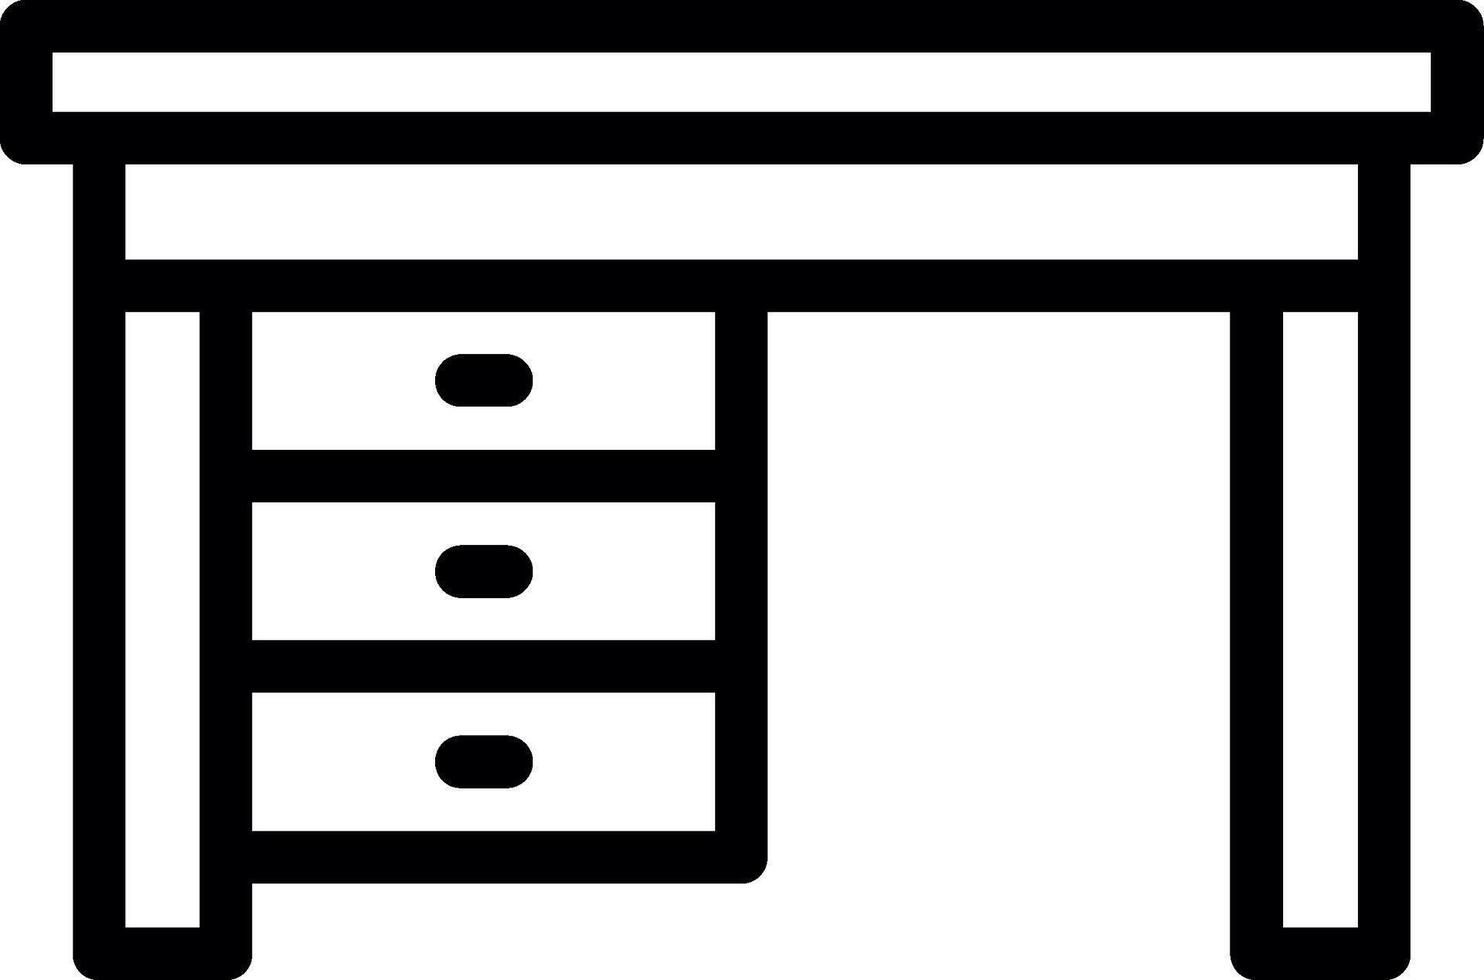 Desk Line Icon vector